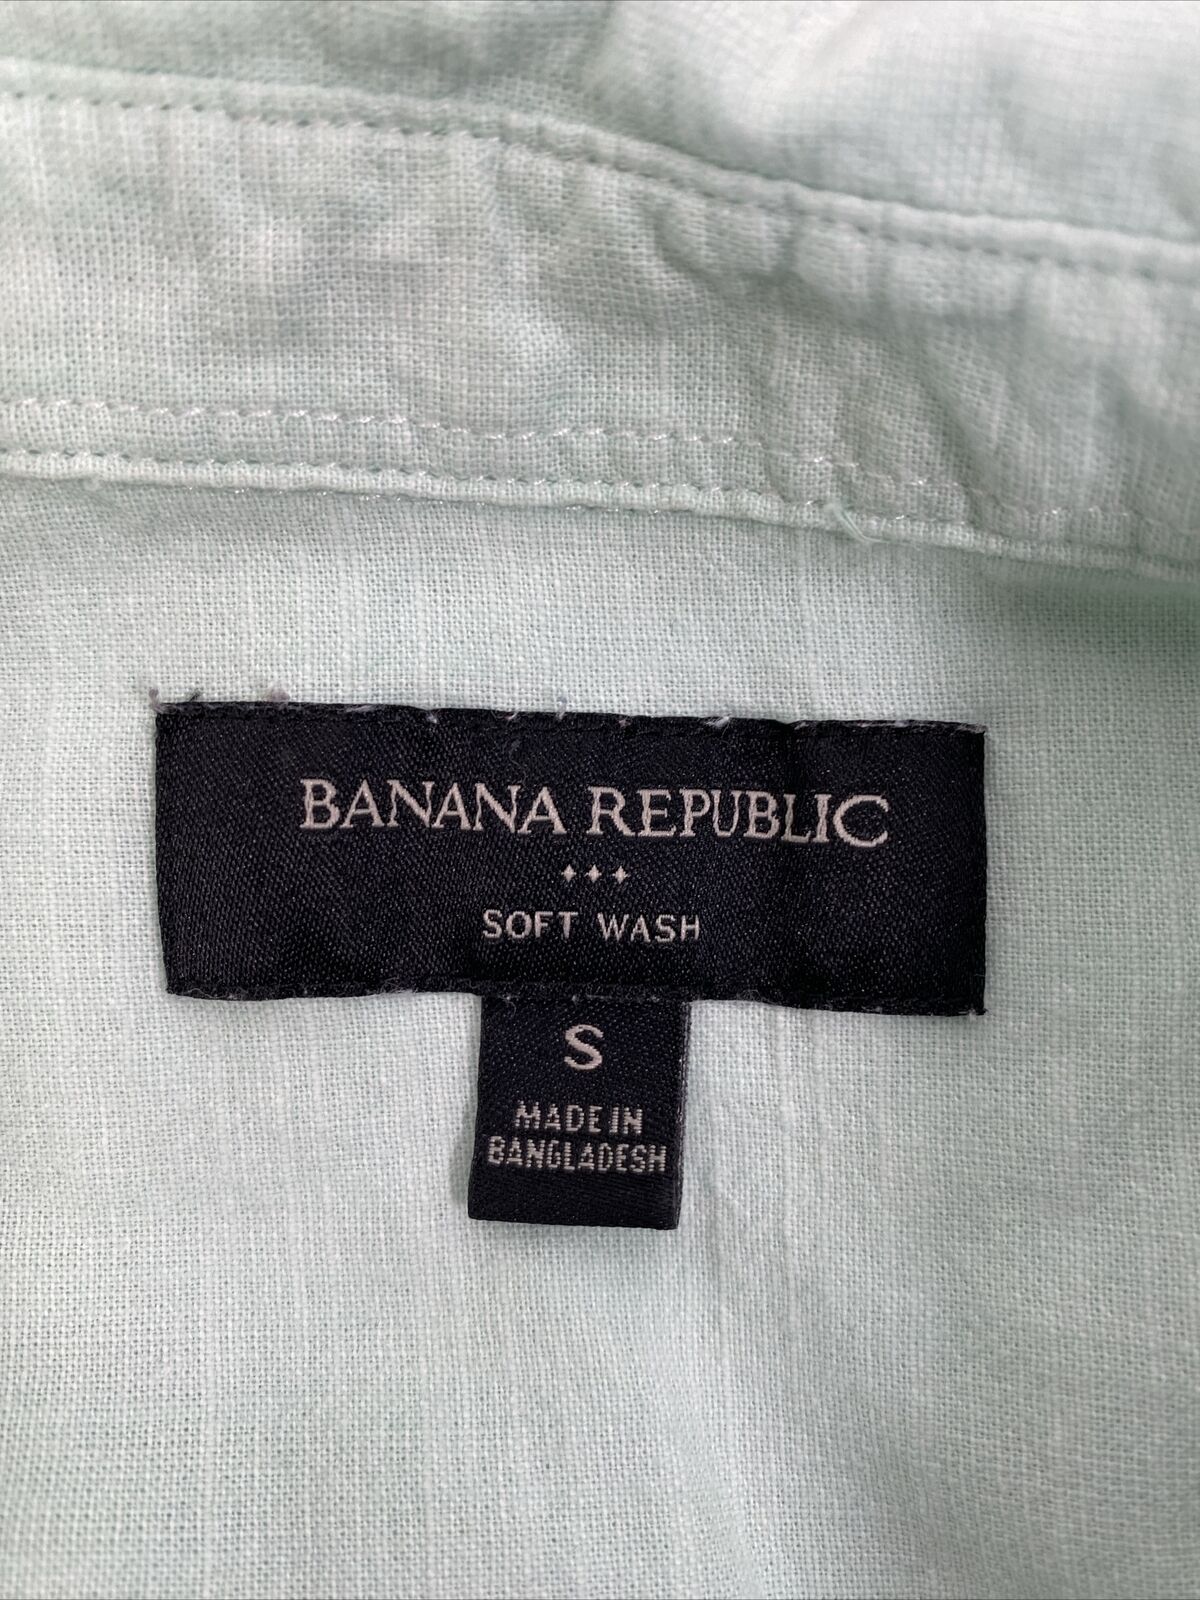 Banana Republic Women's Blue Soft Wash Button Up Shirt - S